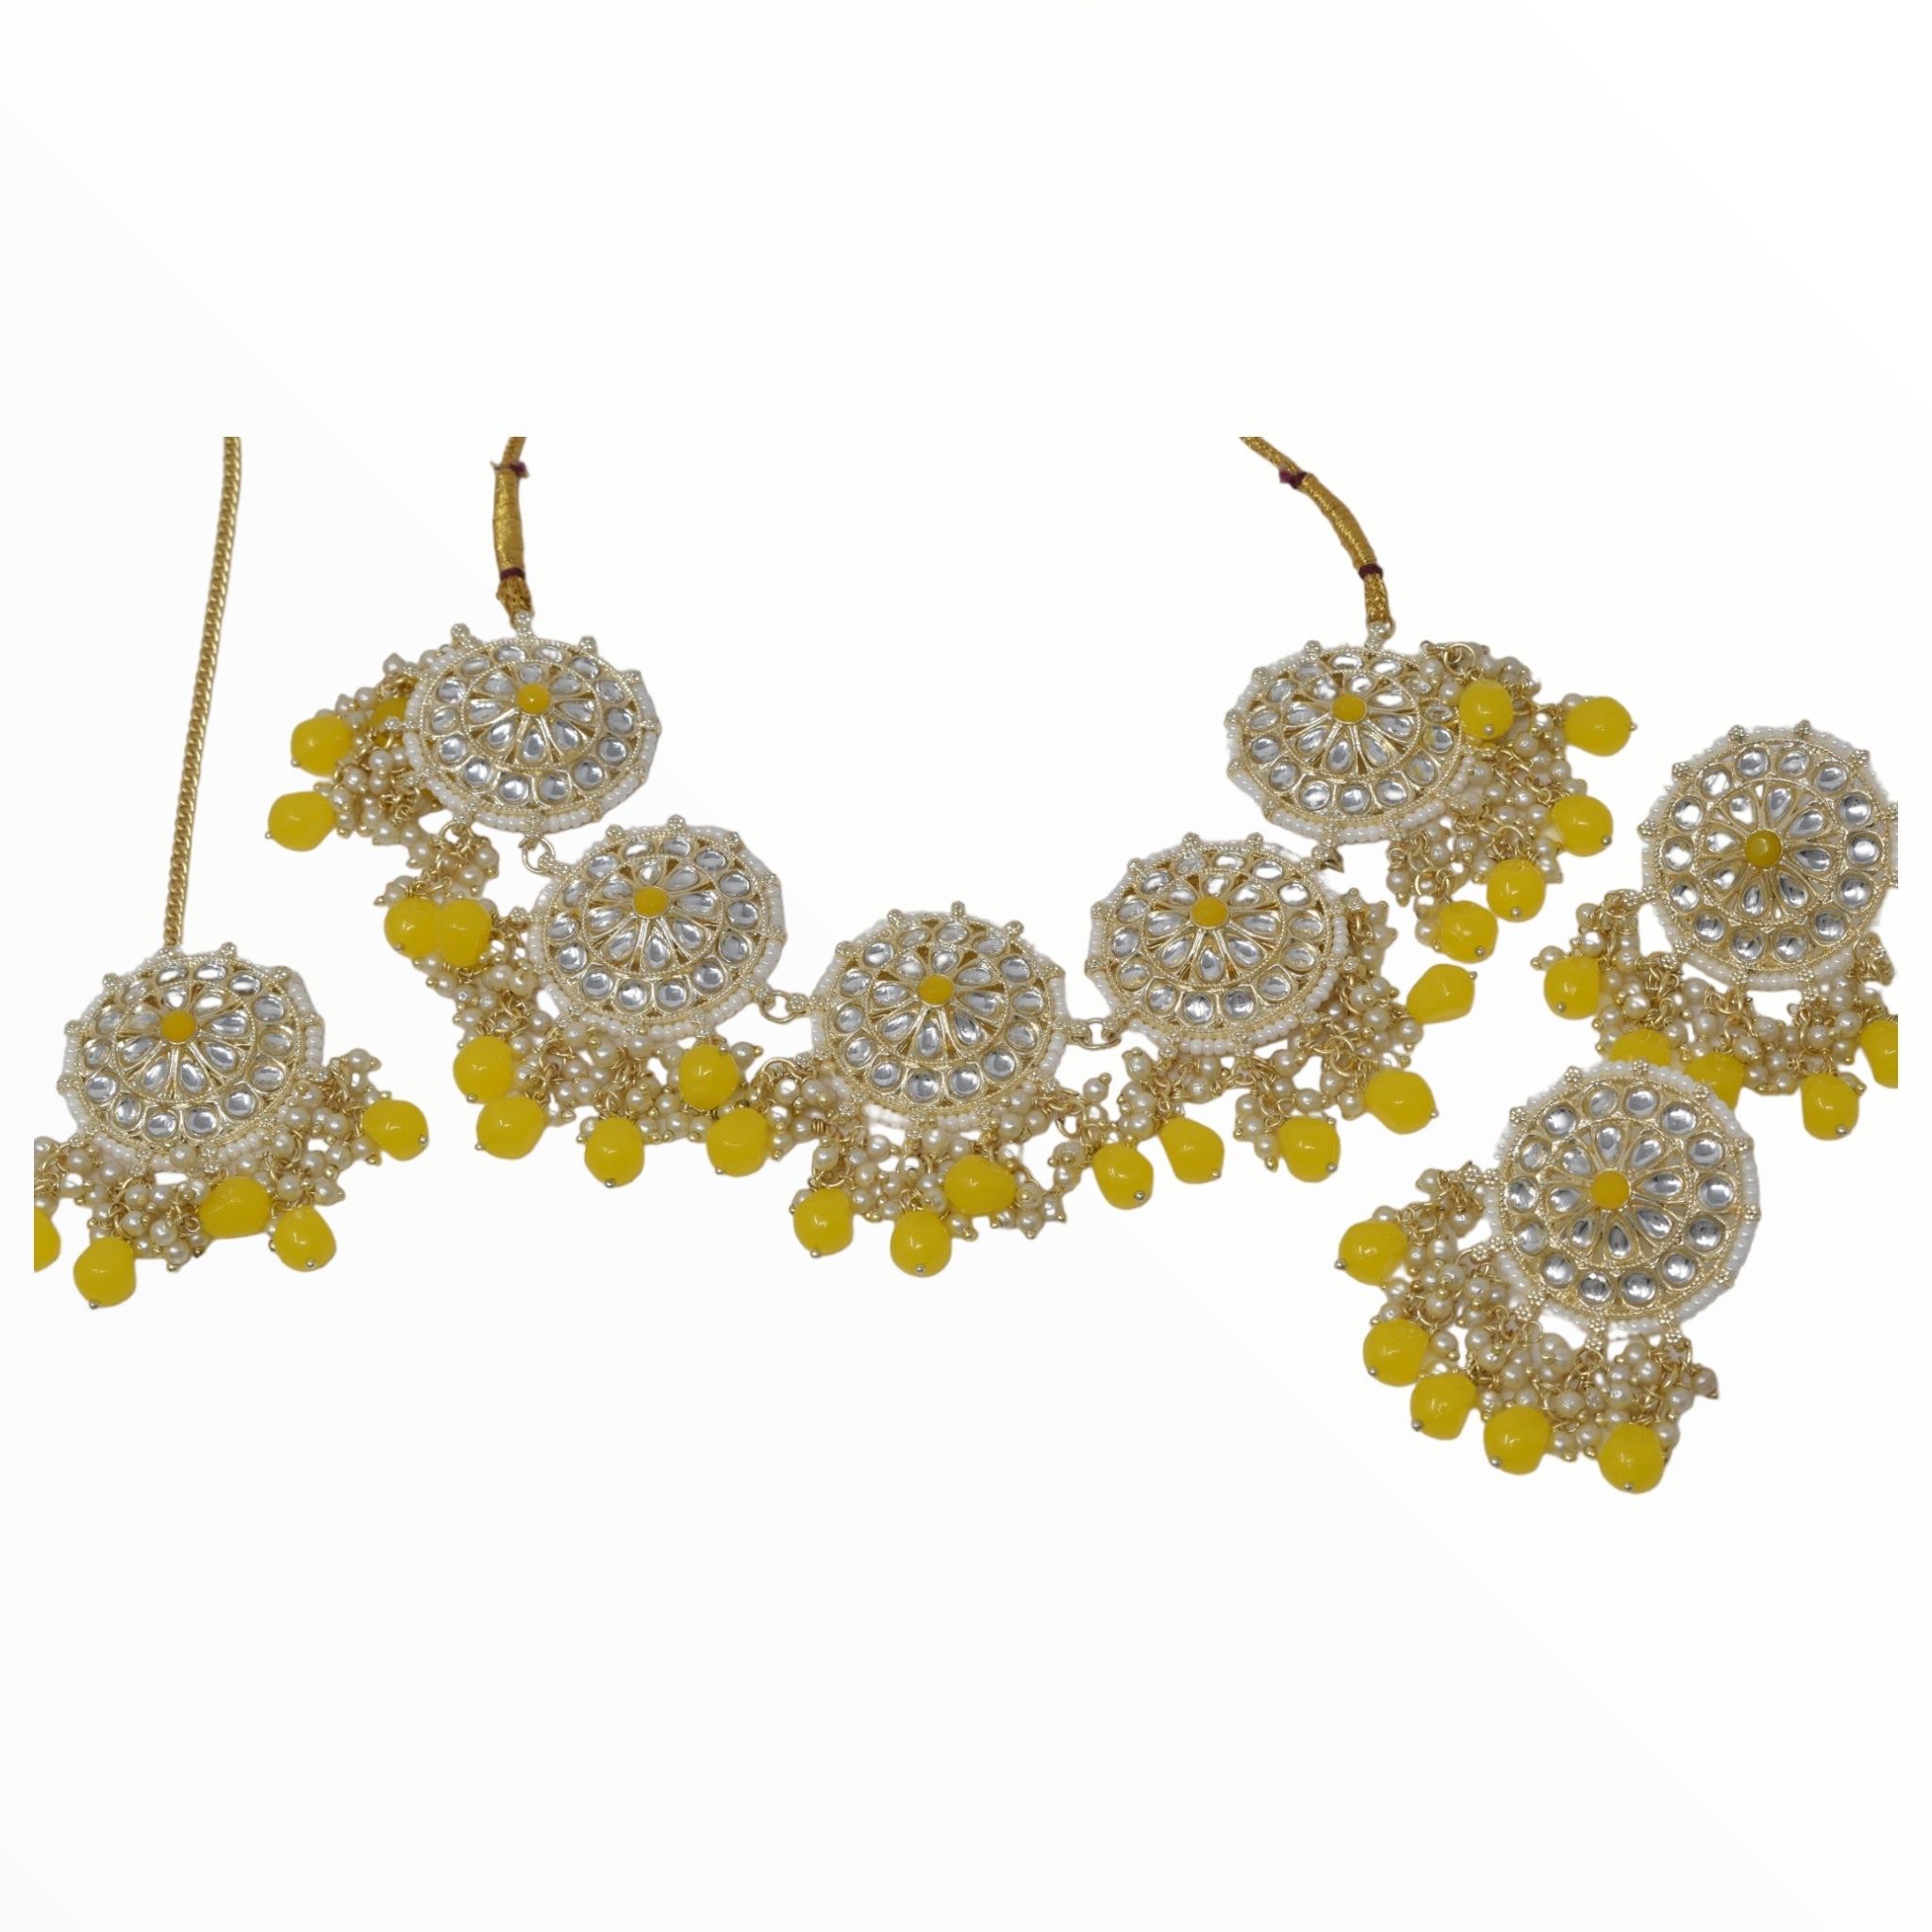 Antique design Minakari work Gold plated choker set neckpiece